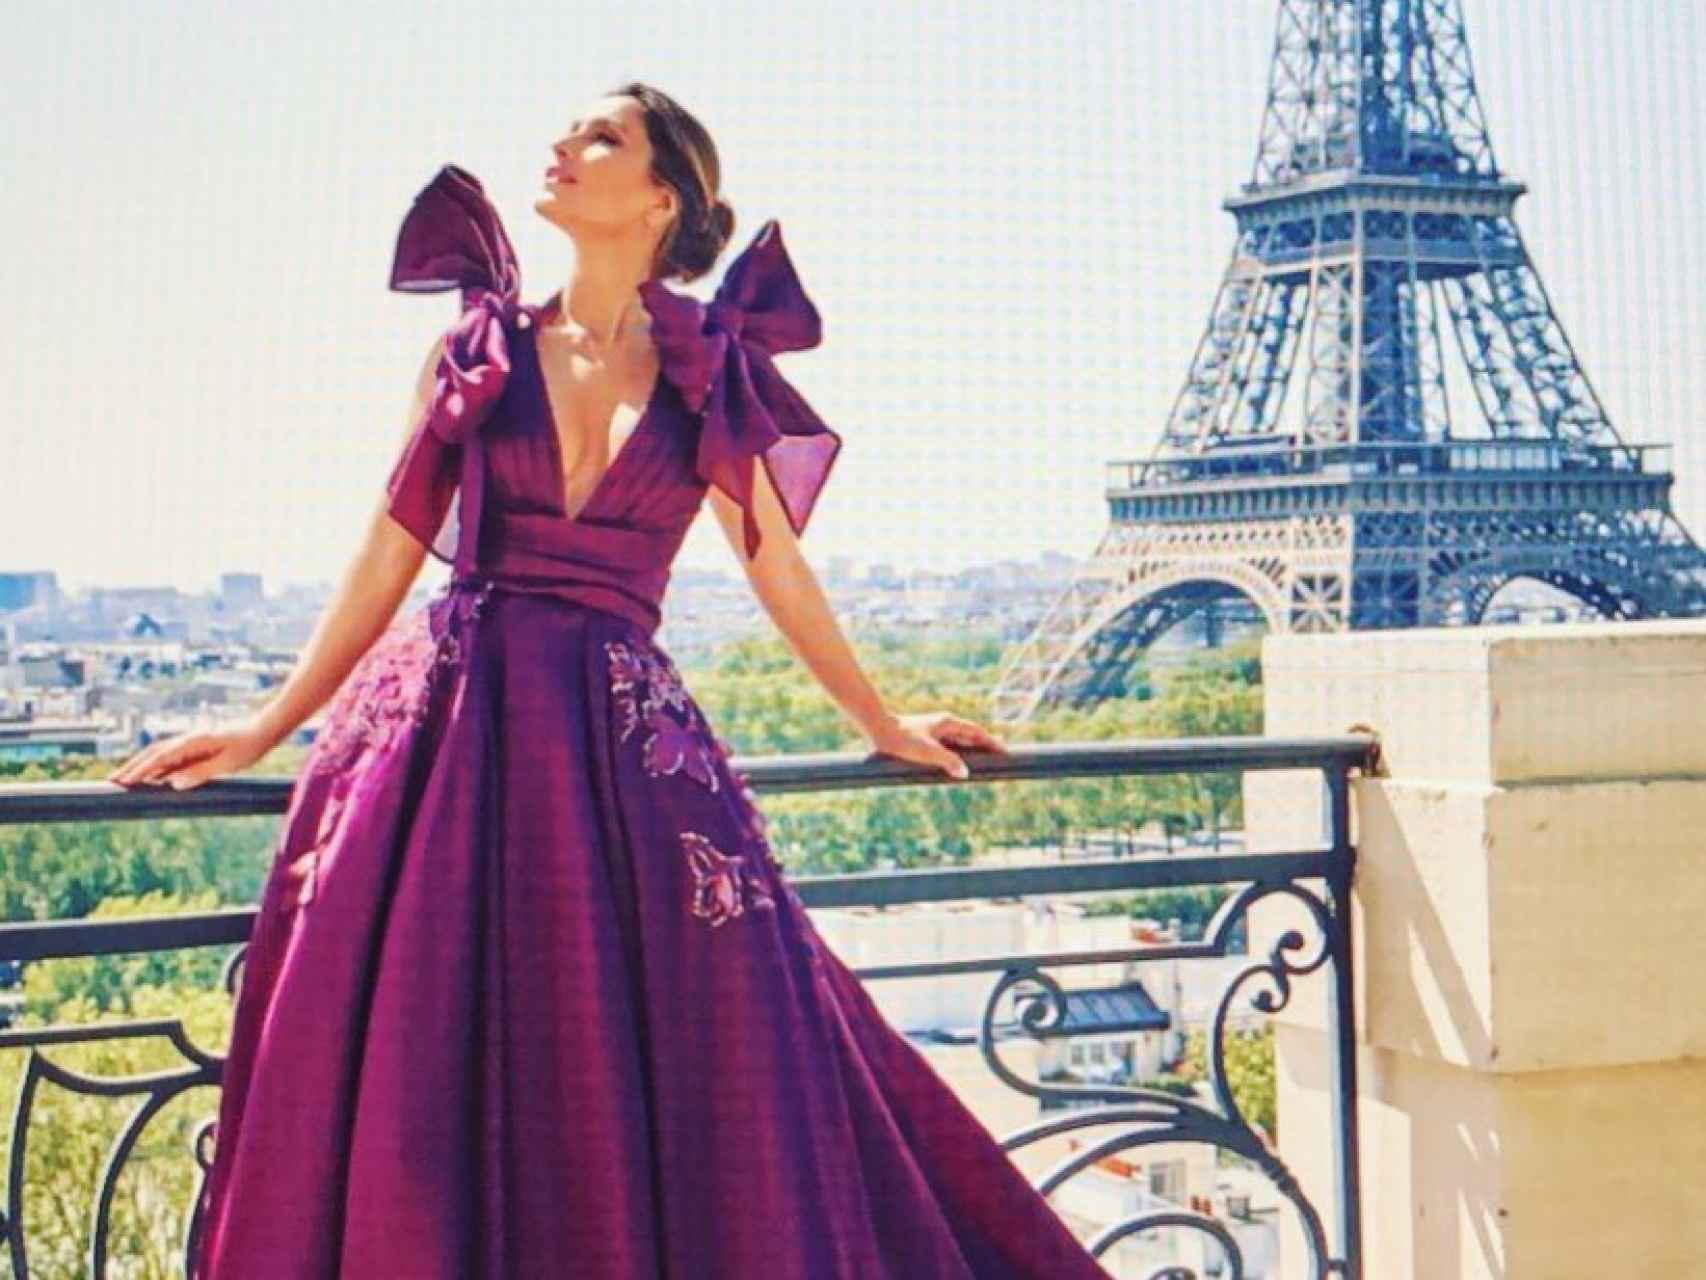 La exmujer de Enrique Ponce posando con uno de sus diseños en París, con la Torre Eiffel de fondo.